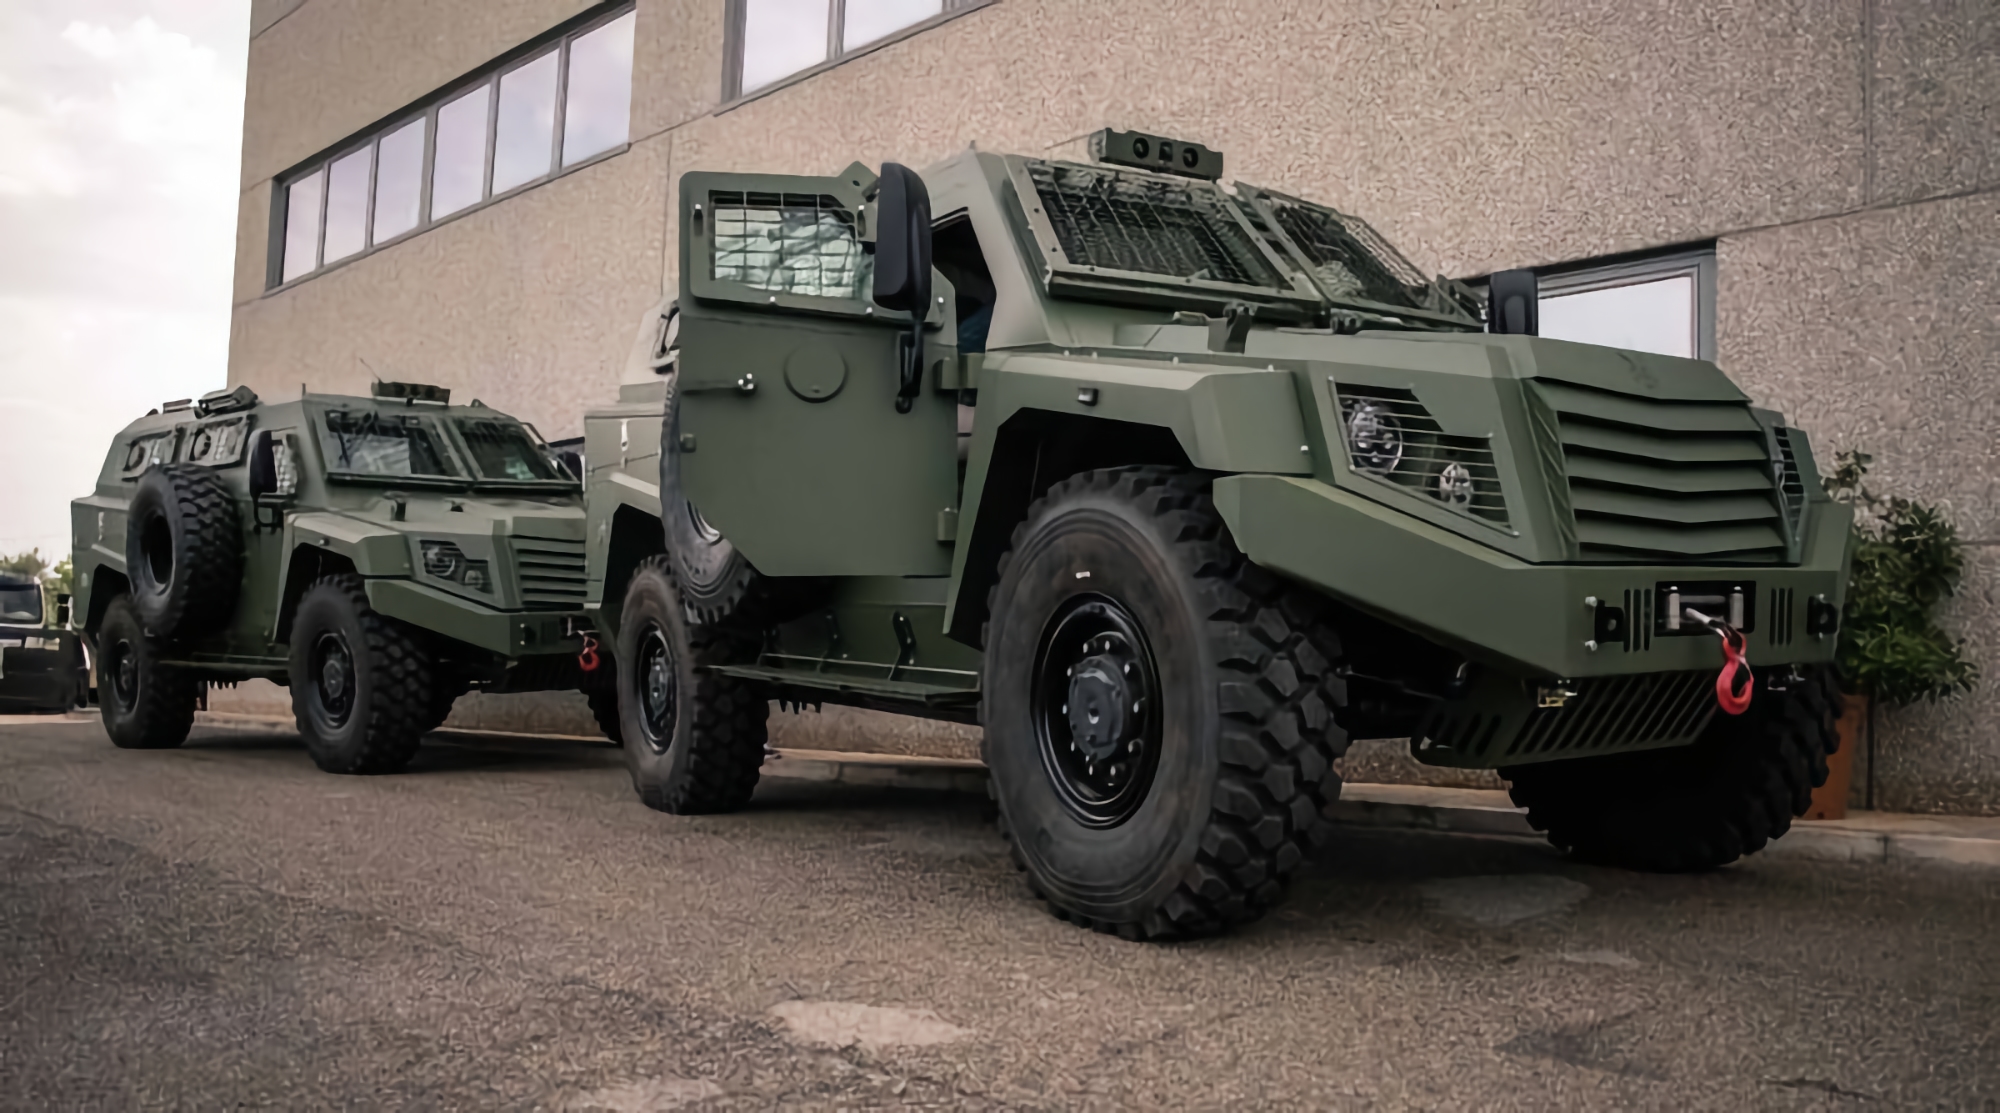 Ukrainische Fallschirmjäger erhielten 11 gepanzerte italienische MLS Shield-Fahrzeuge mit Wärmebild- und Überwachungskameras